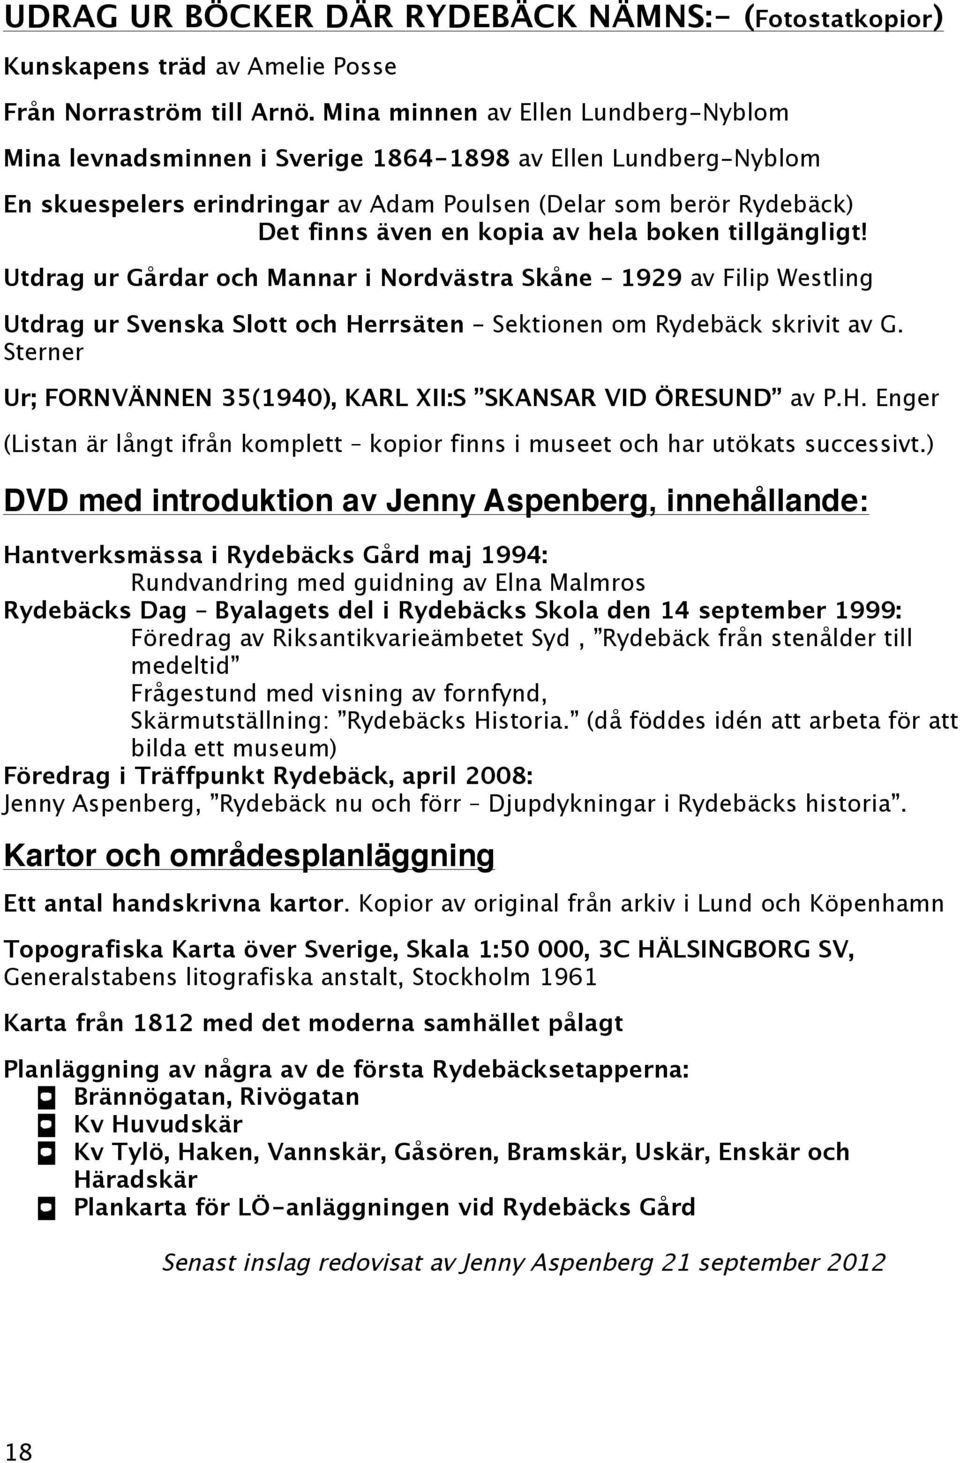 hela boken tillgängligt! Utdrag ur Gårdar och Mannar i Nordvästra Skåne 1929 av Filip Westling Utdrag ur Svenska Slott och Herrsäten Sektionen om Rydebäck skrivit av G.